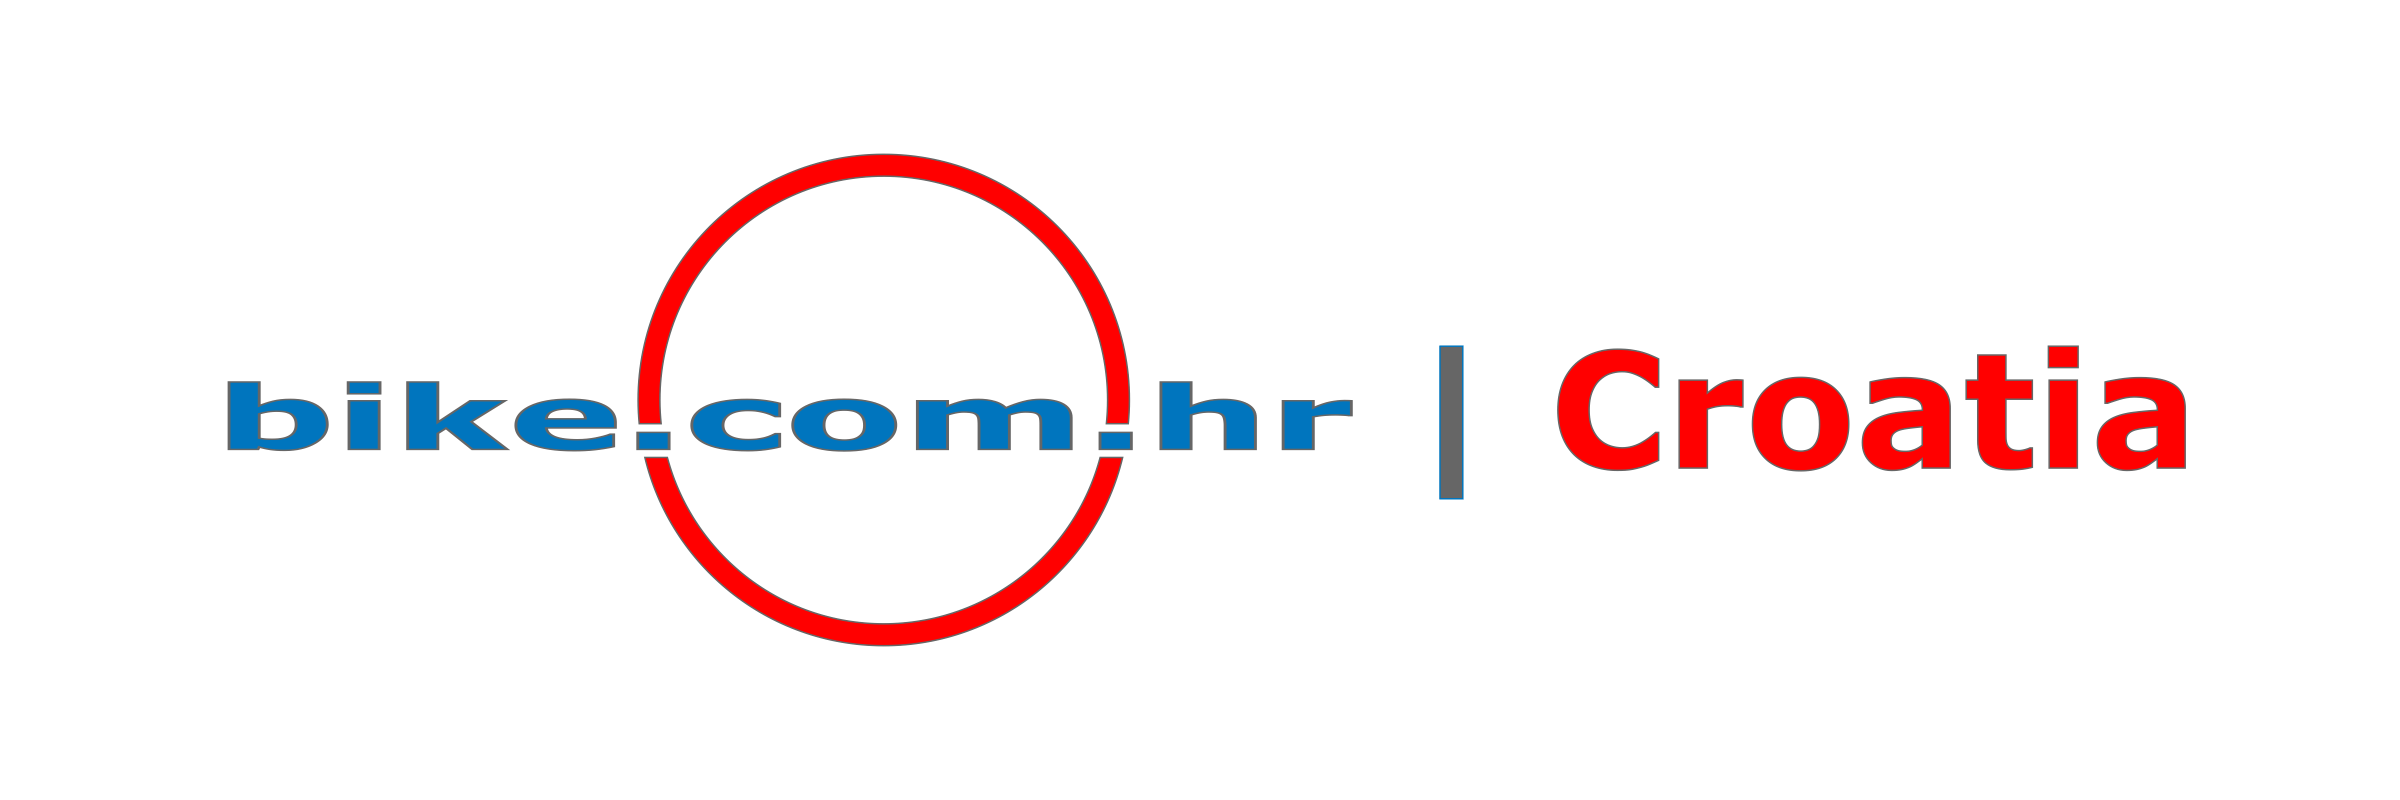 logo of bike.com.hr